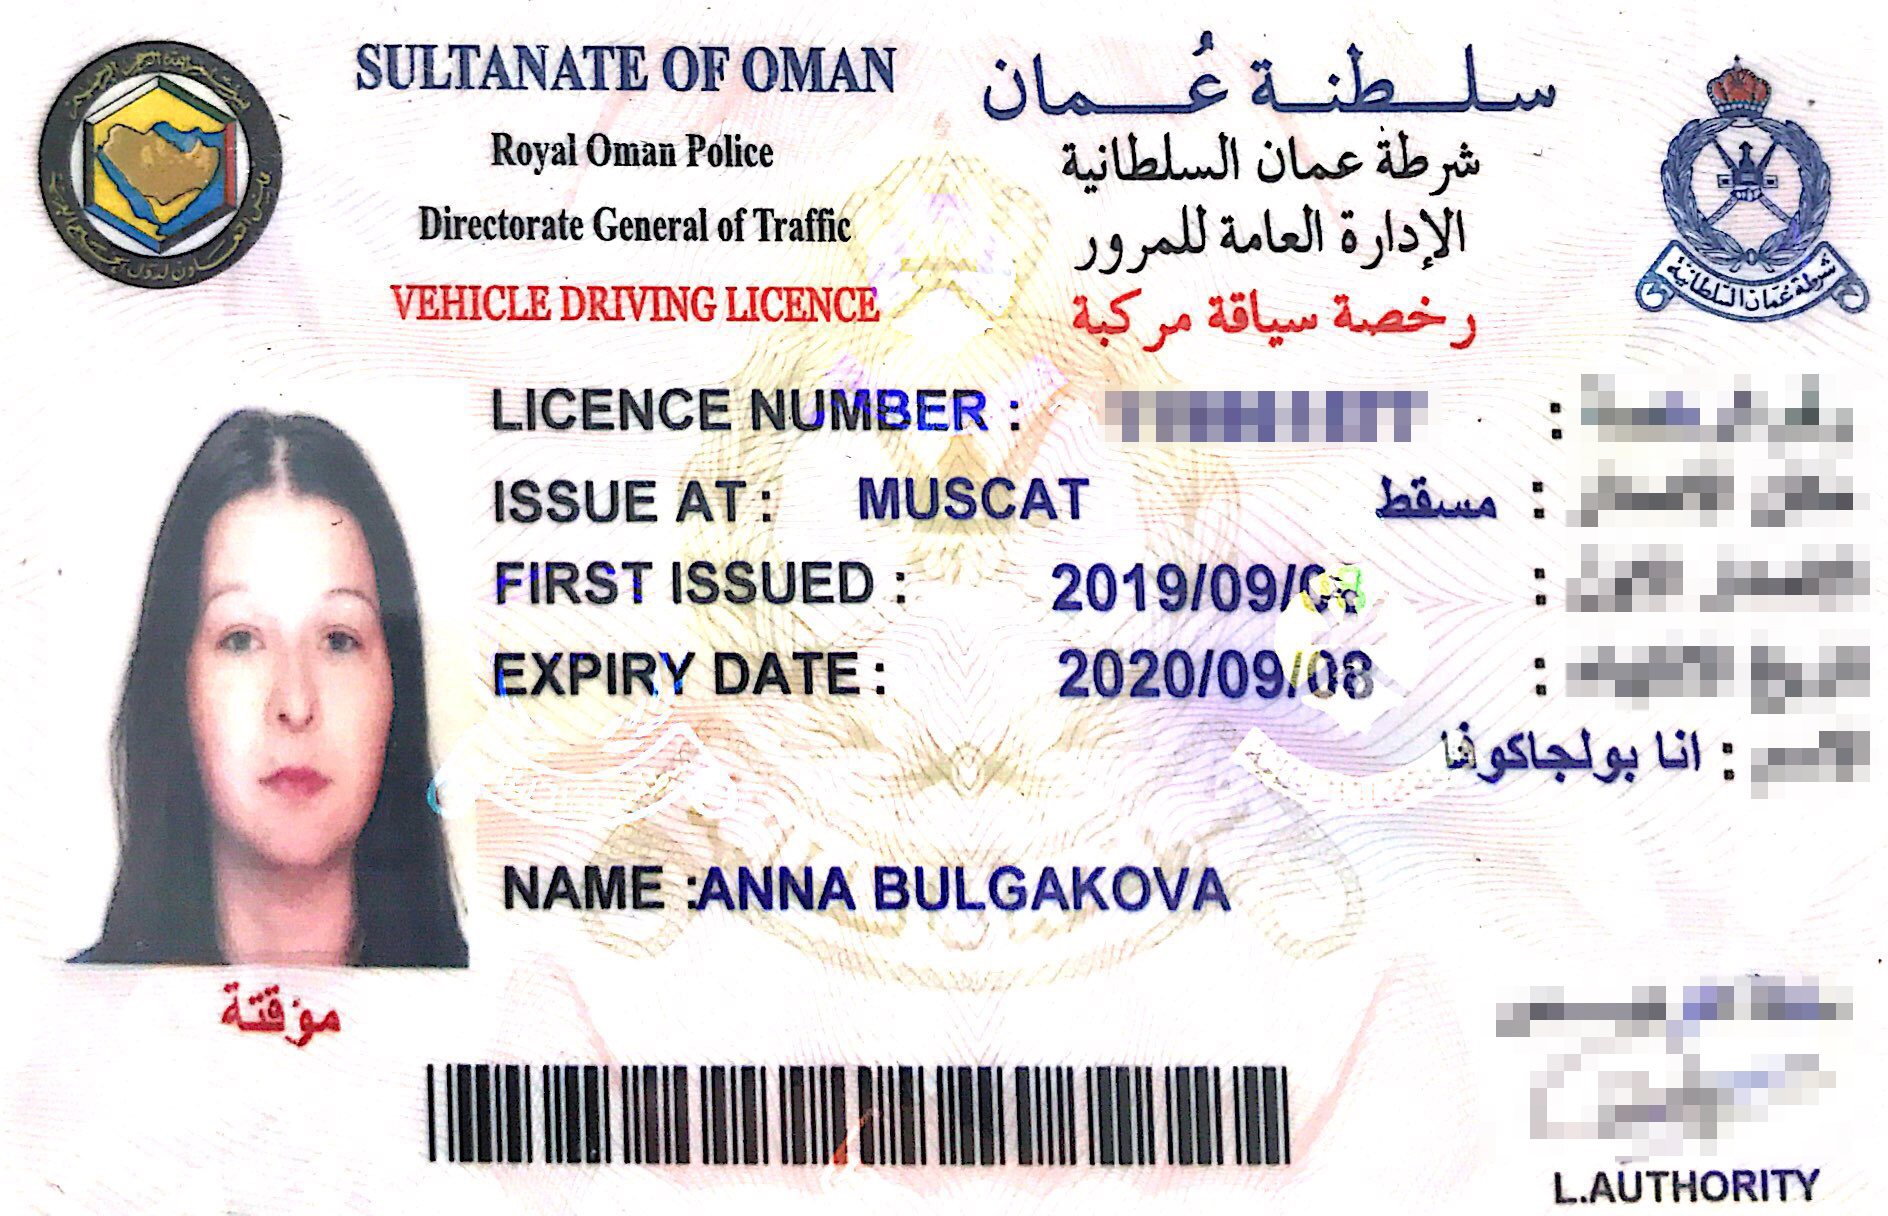 Так выглядят мои оманские права. С ними я могу водить во всех странах Персидского залива: в Бахрейне, Кувейте, ОАЭ, Катаре, а с недавних пор и в Саудовской Аравии